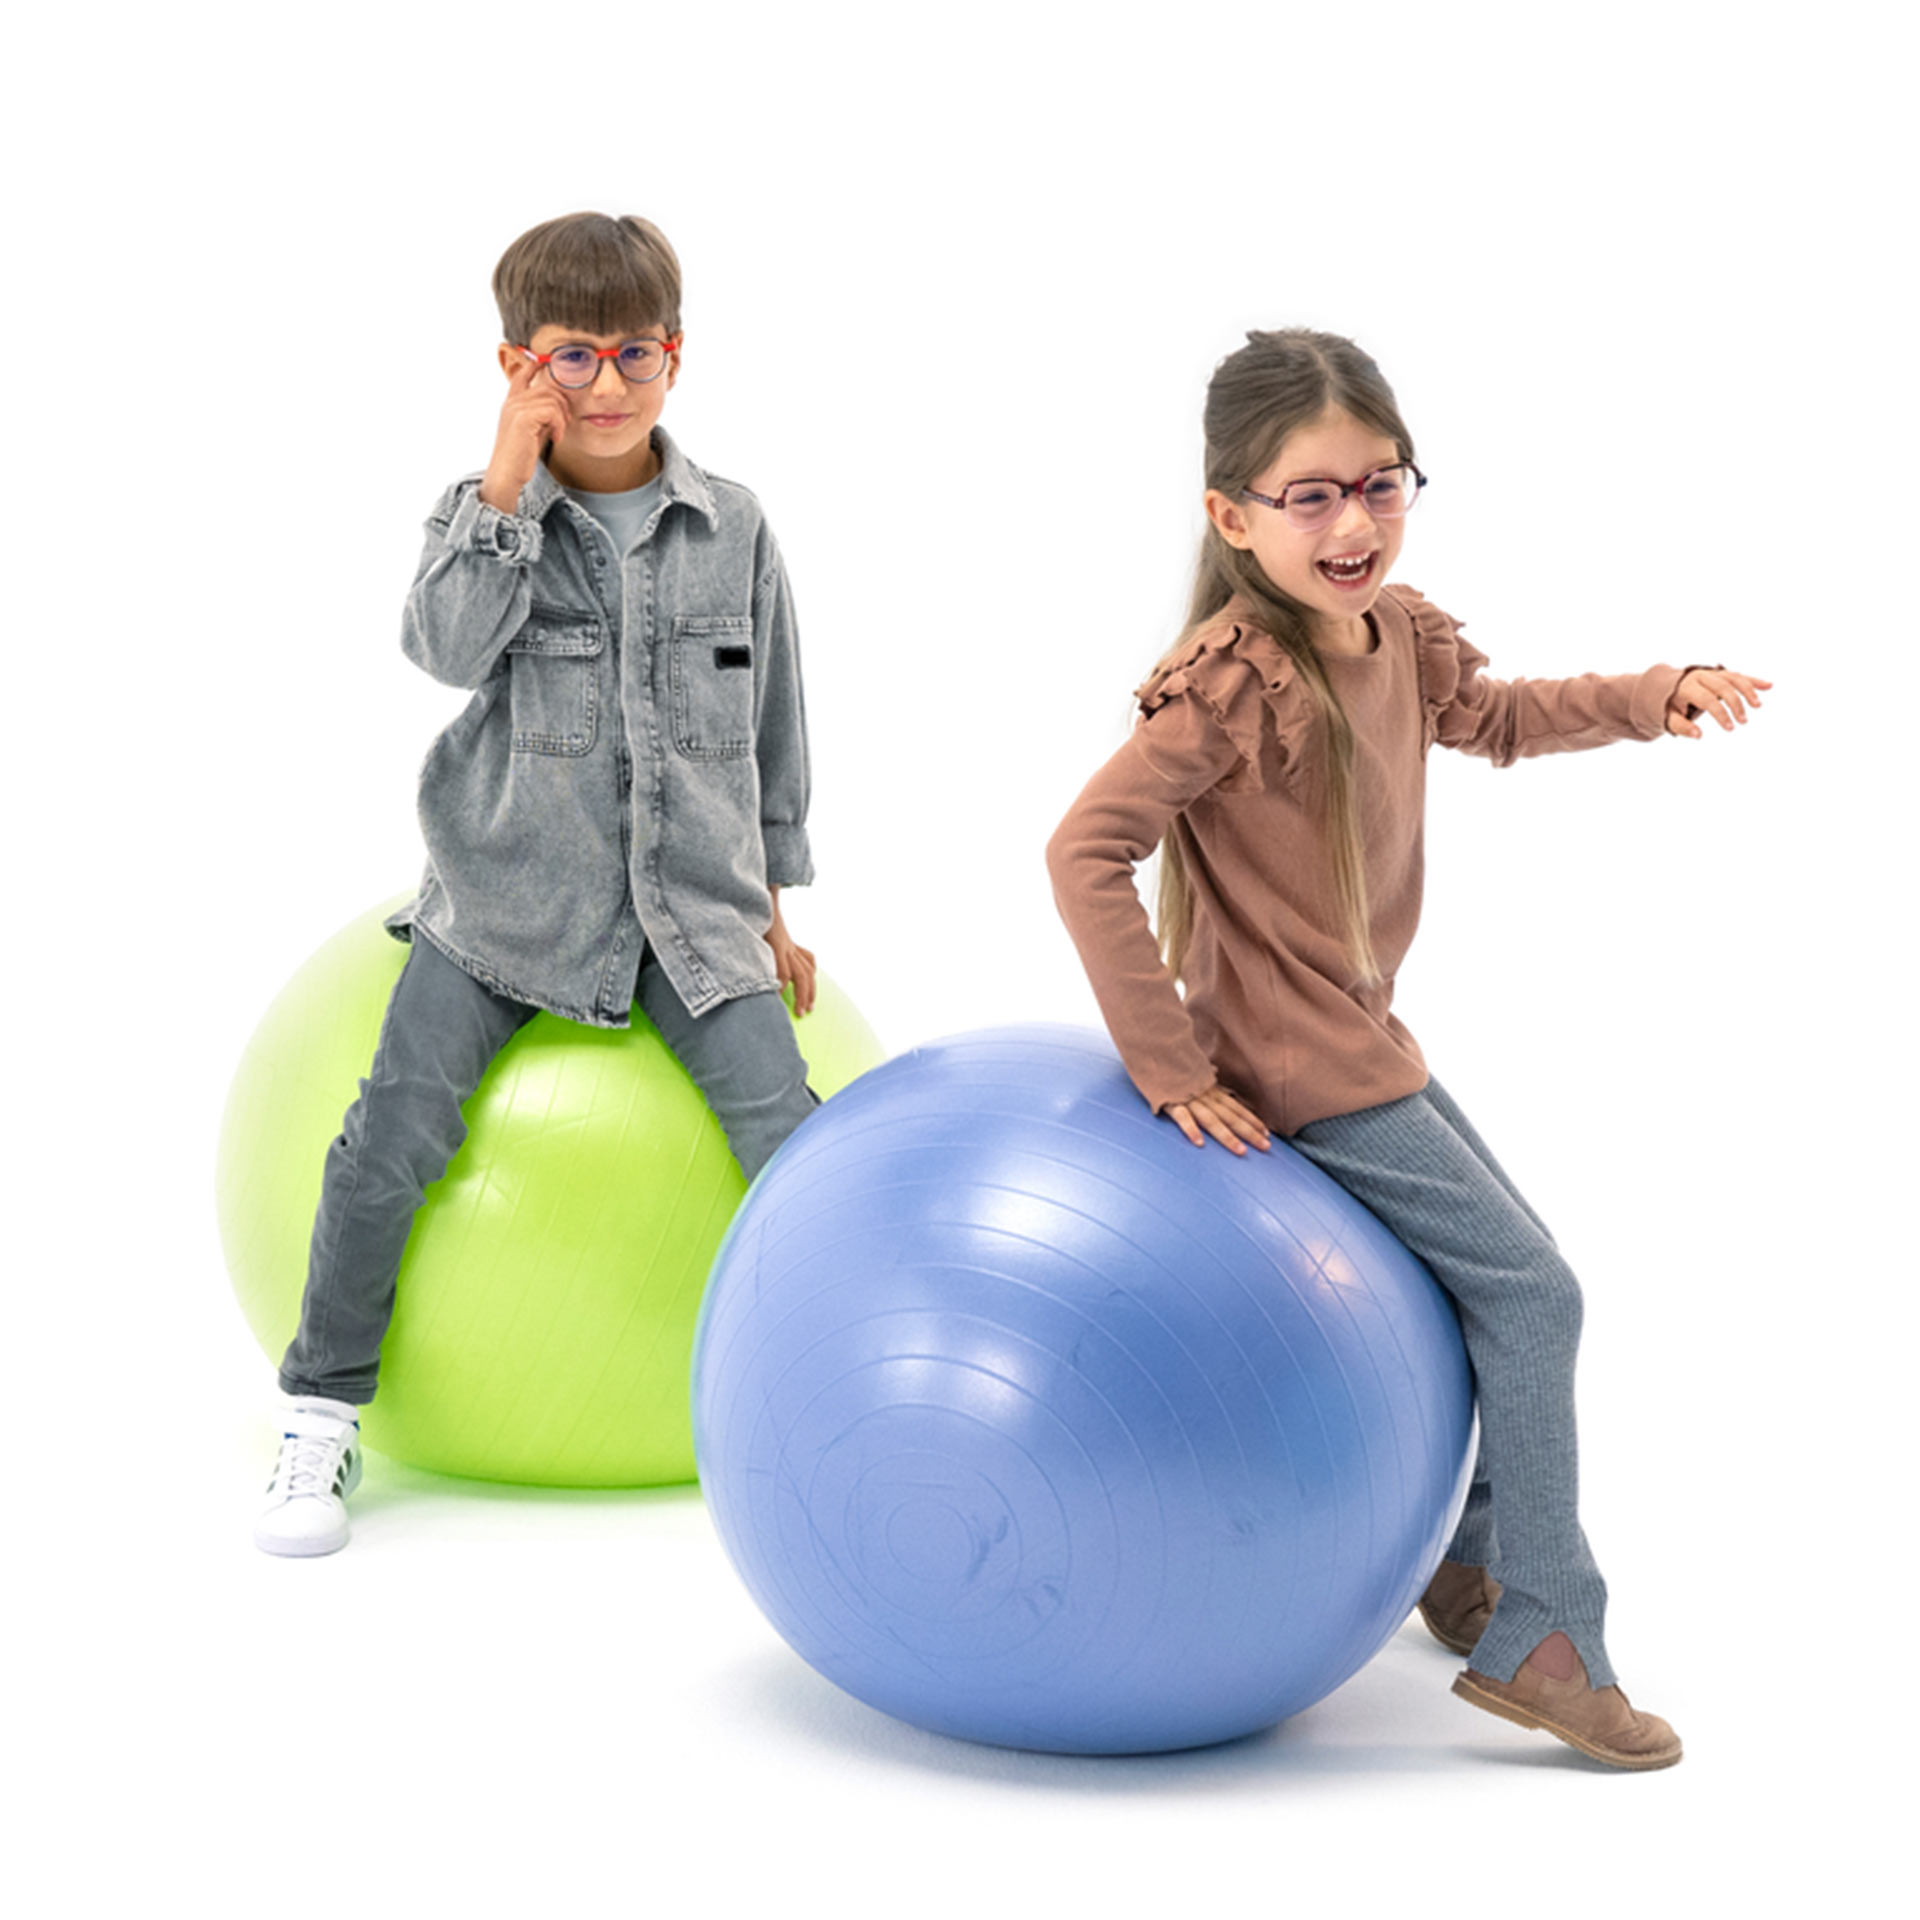 兩位分別戴著眼鏡的男孩和女孩，開心的拍體操球玩 。